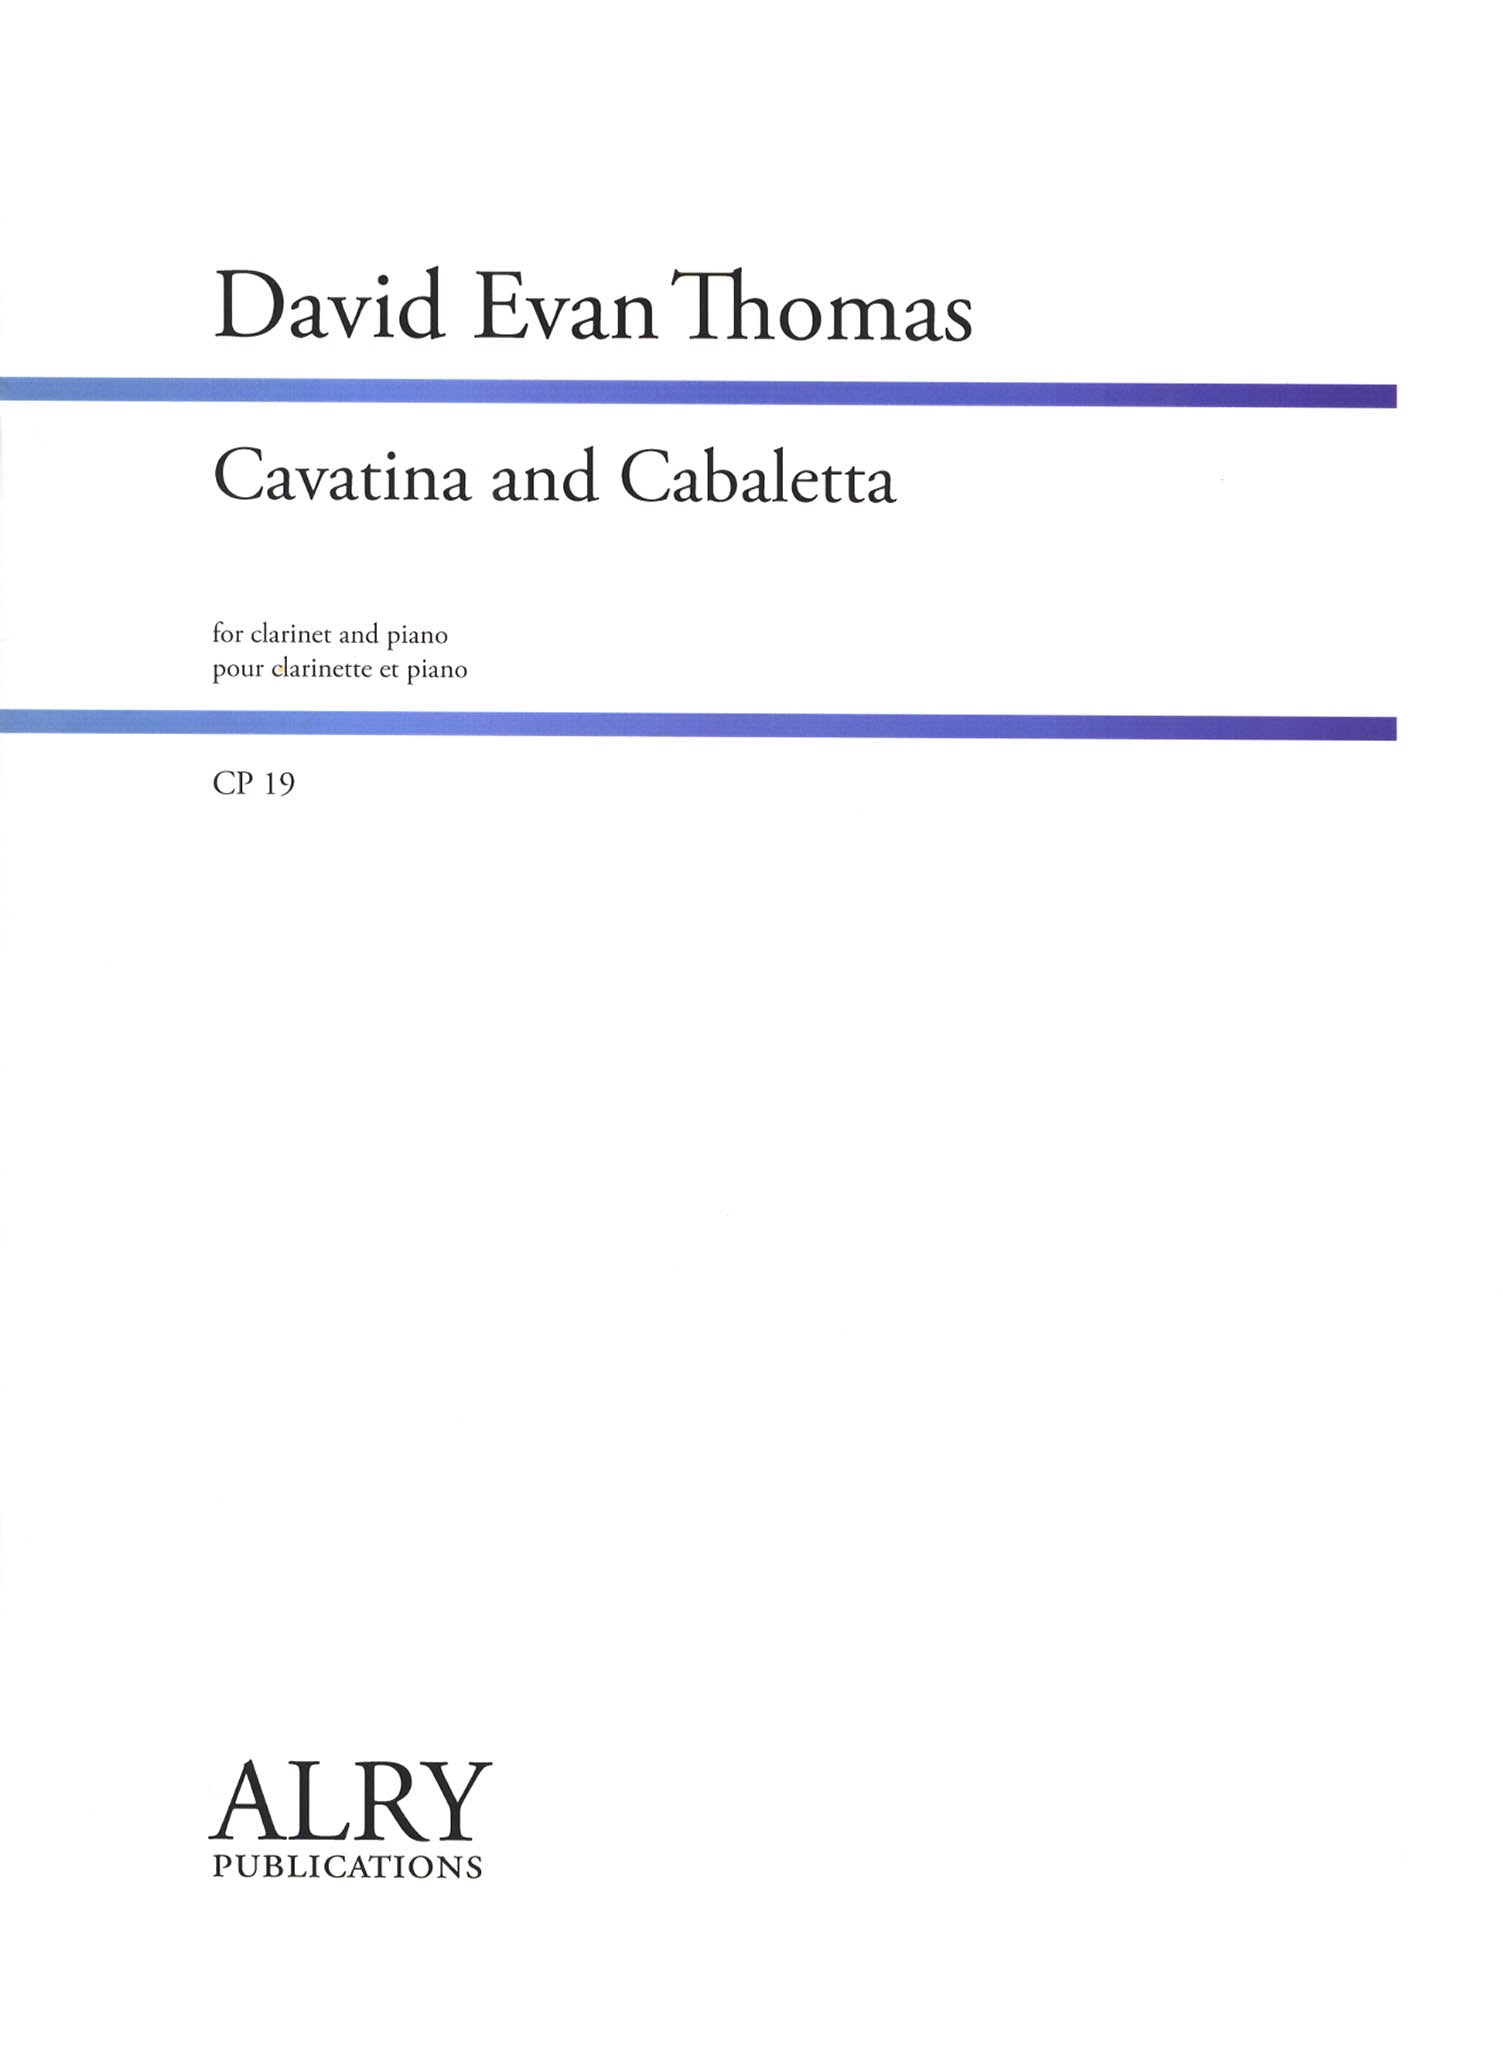 David Evan Thomas Cavatina and Cabaletta clarinet & piano cover